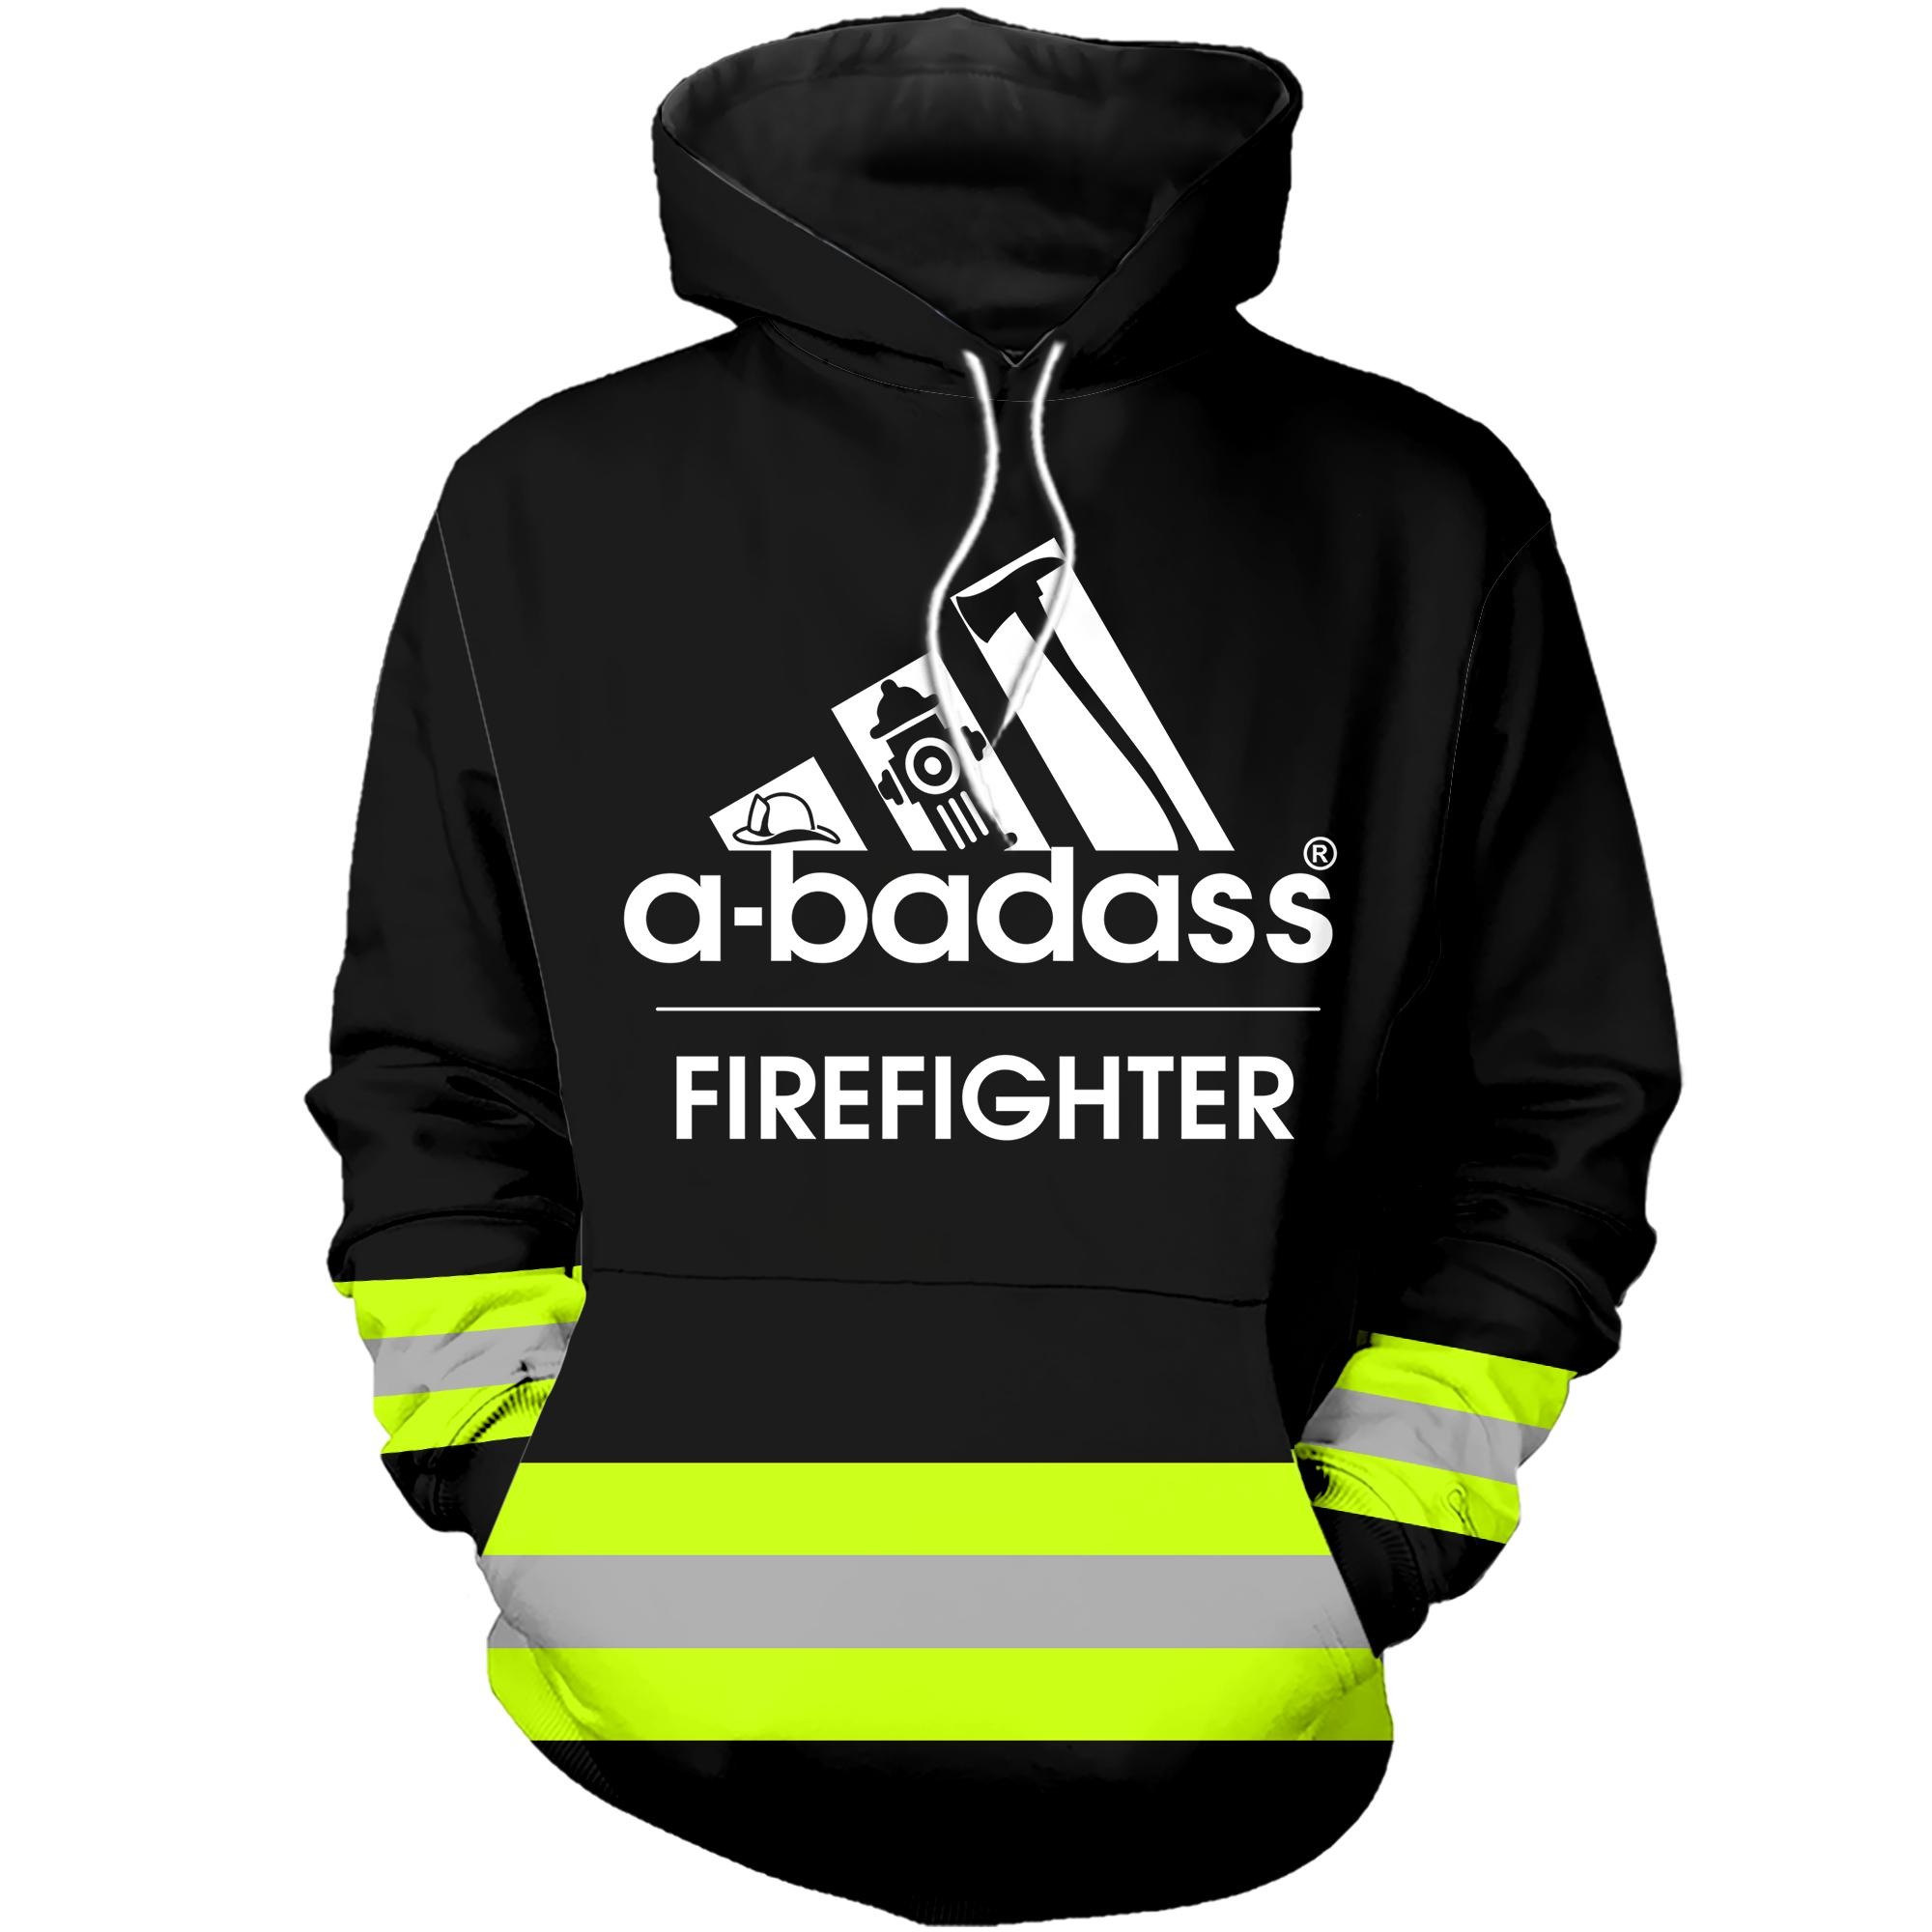 A badass firefighter 3D hoodies